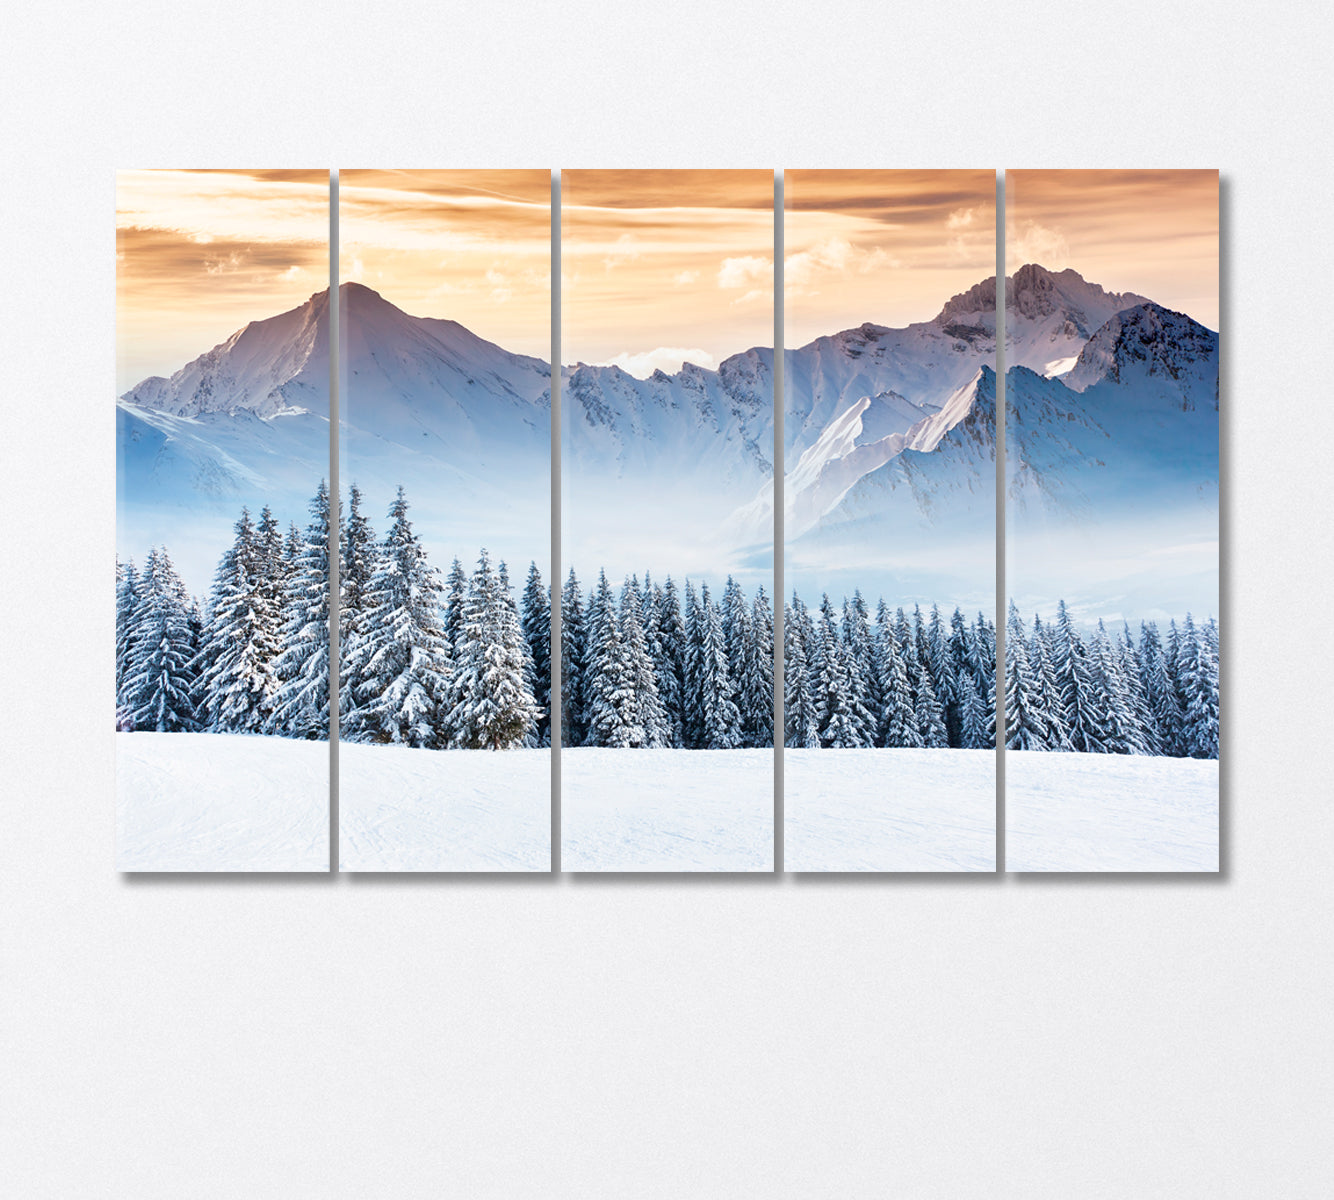 Snow Capped Mountains Fantastic Winter Landscape Canvas Print-Canvas Print-CetArt-5 Panels-36x24 inches-CetArt